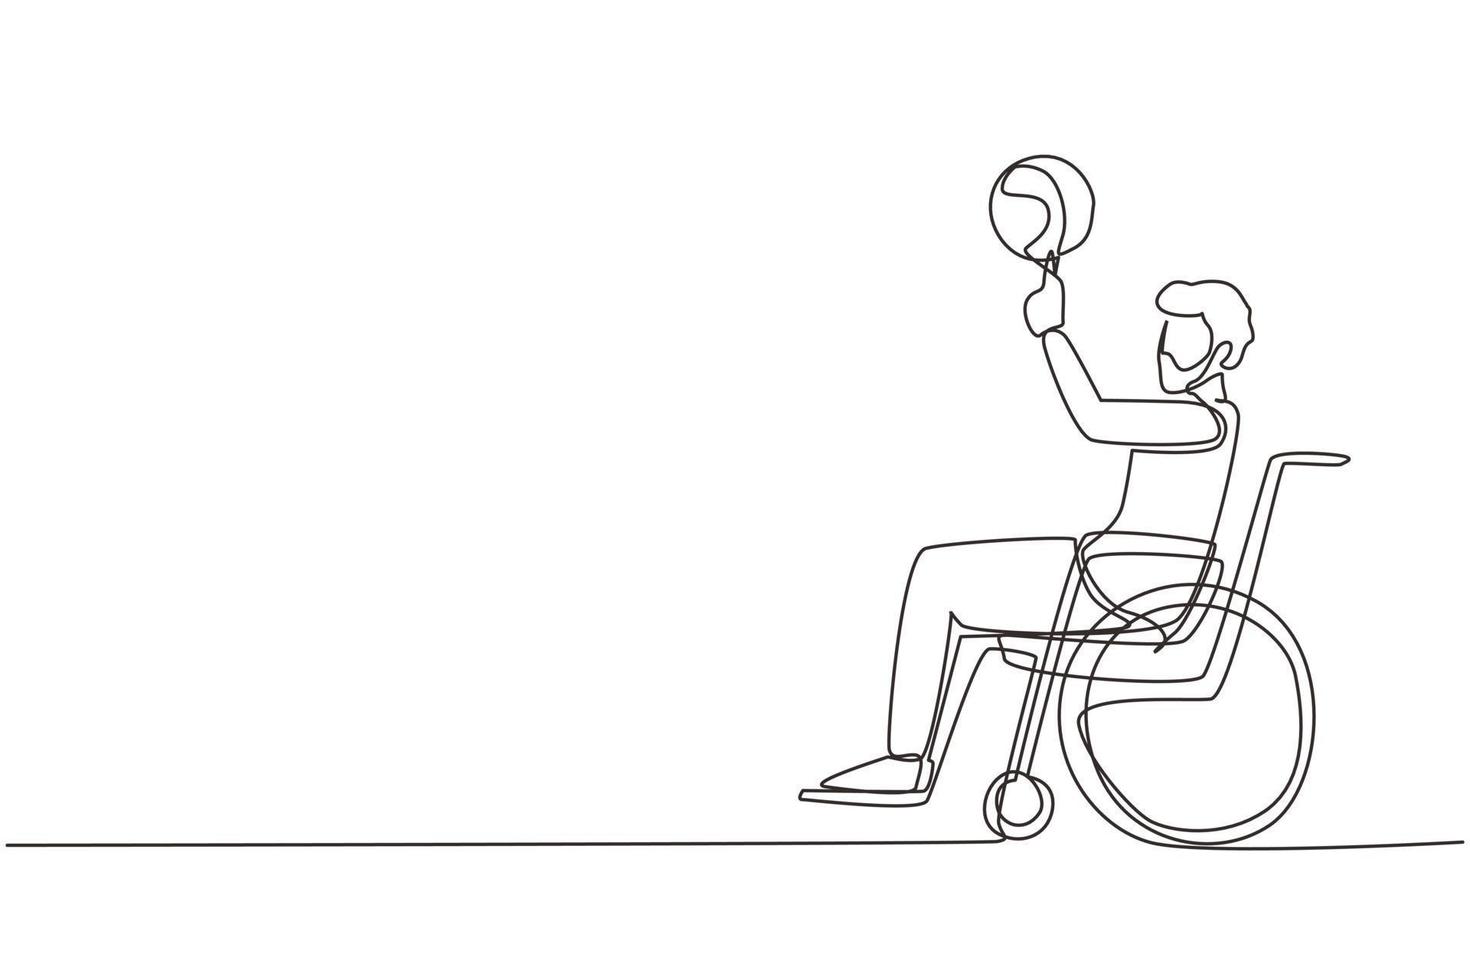 unico disegno a linea continua ragazzo arabo in sedia a rotelle gioca a basket. la persona disabile fa girare la pallacanestro sul dito. esercizio per le persone con disabilità. illustrazione vettoriale di un disegno di linea